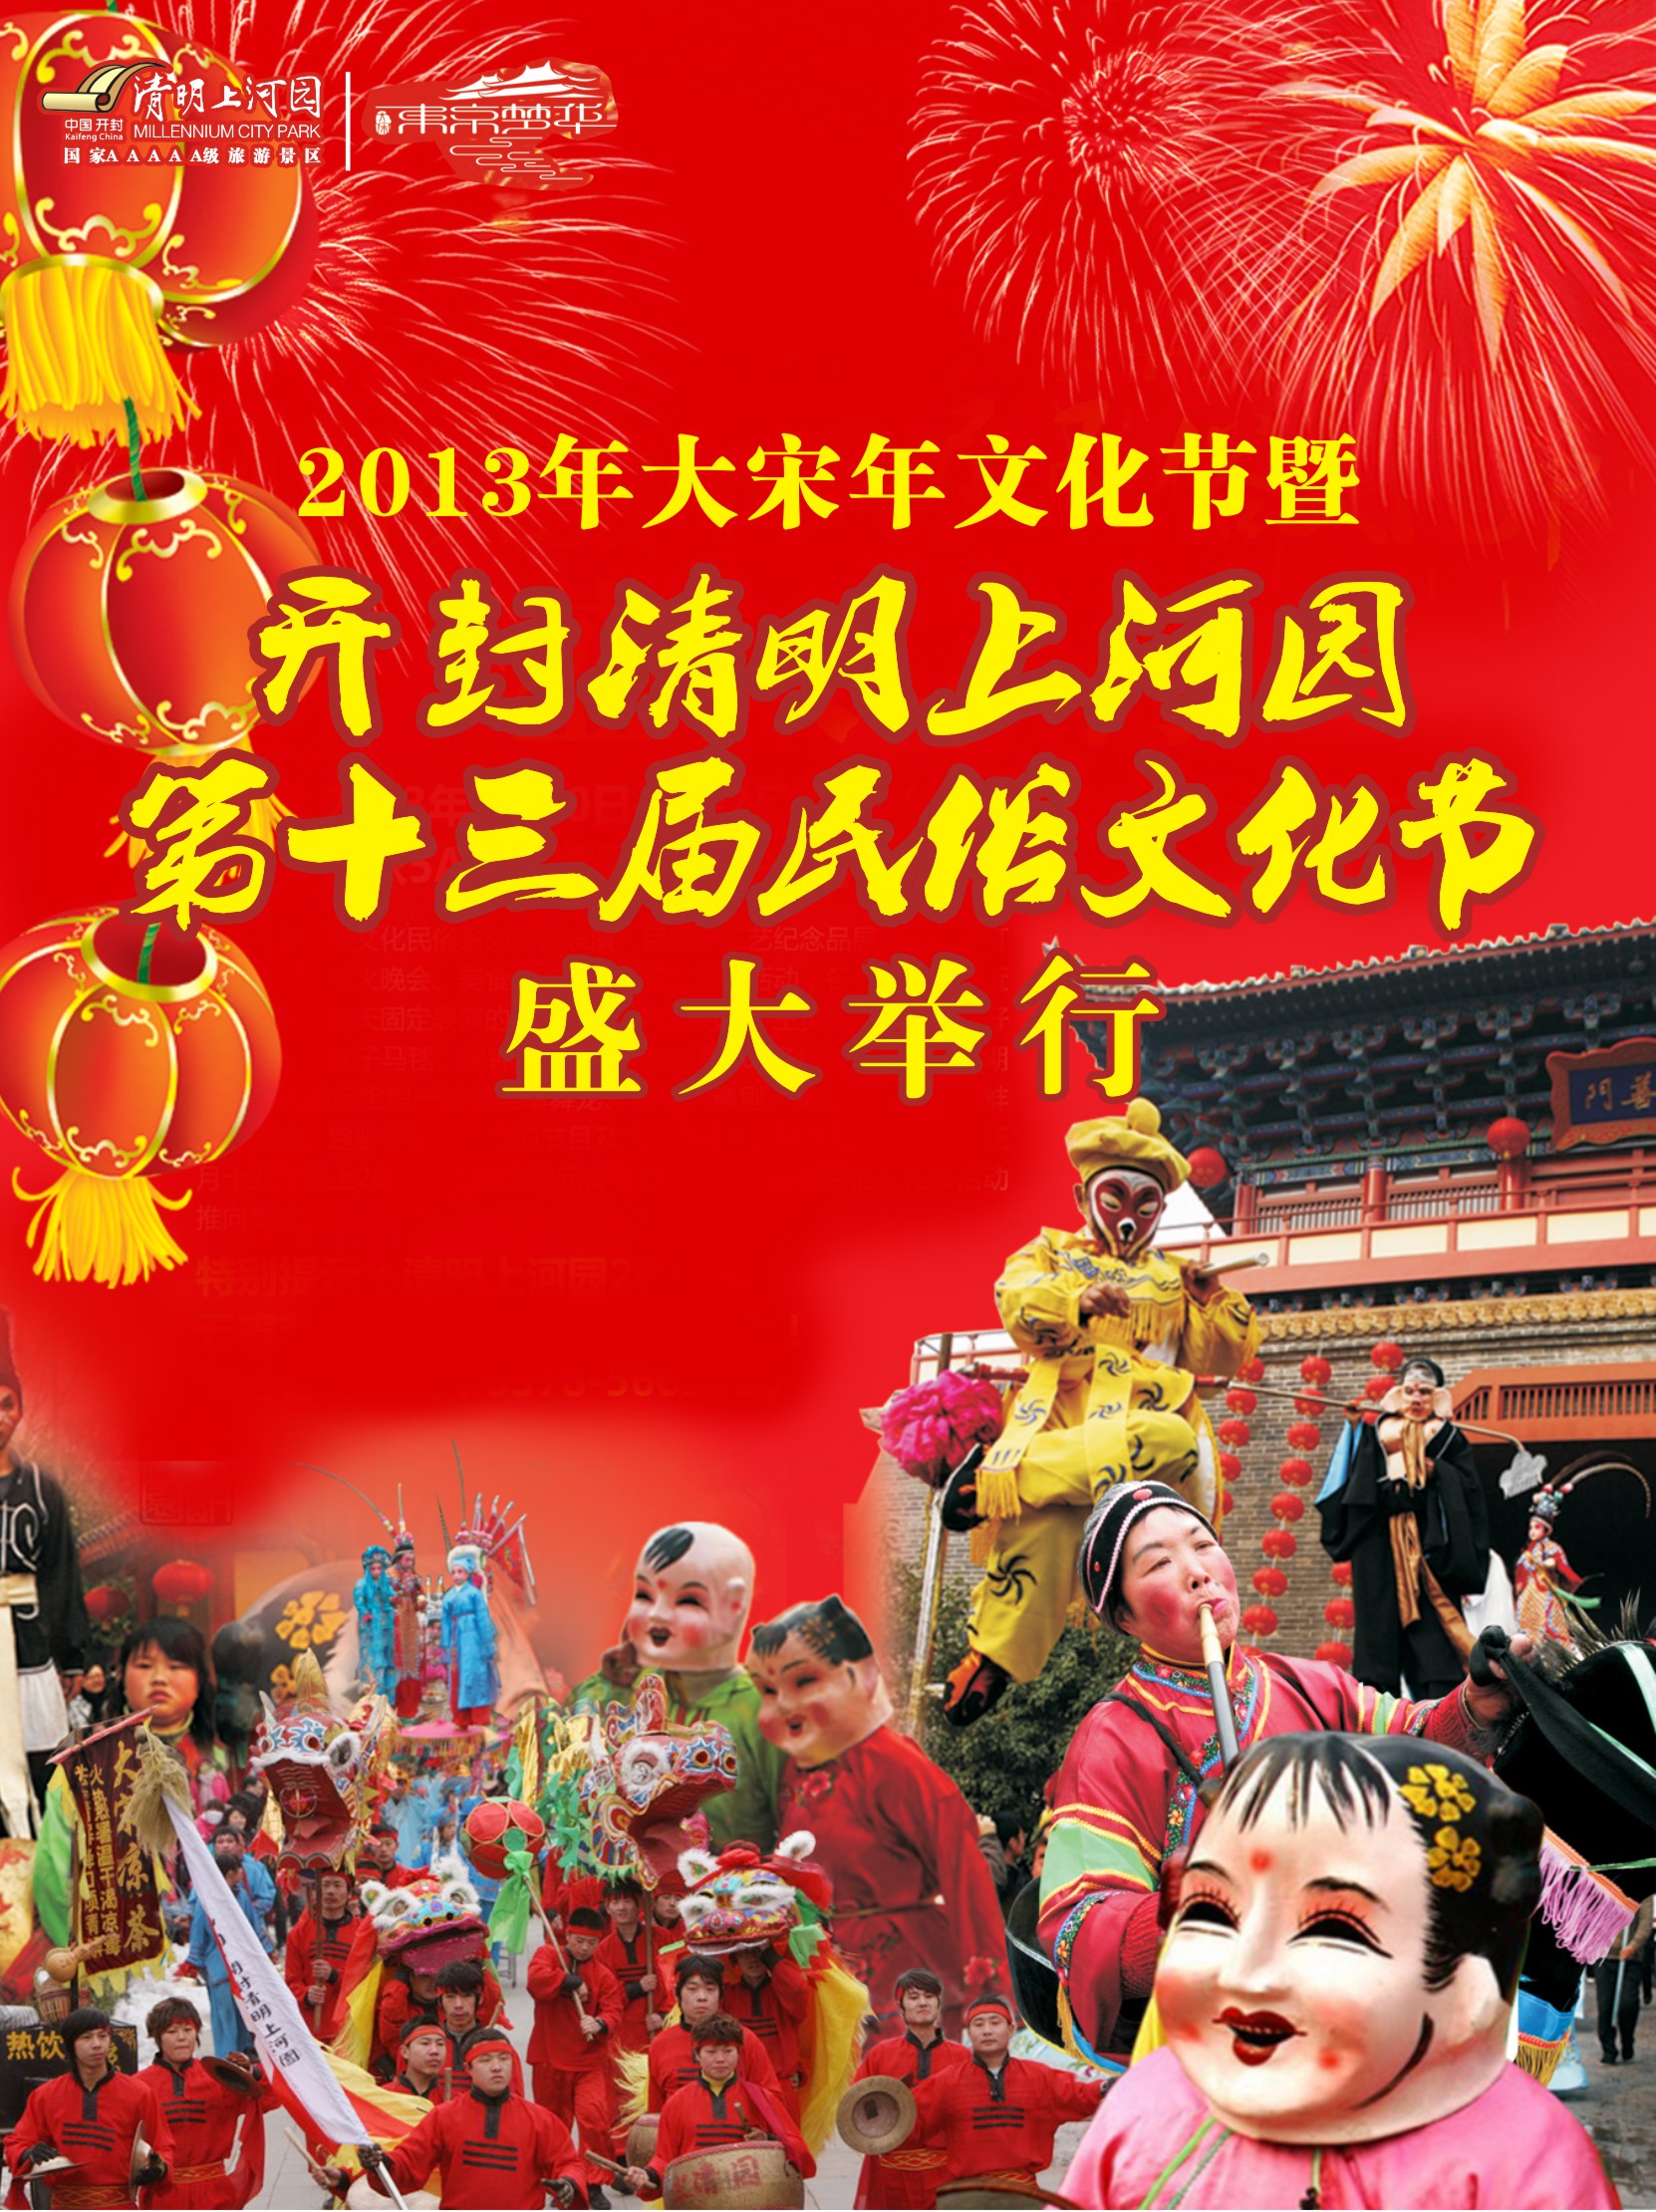 2013年大宋年文化节暨开封清明上河园第十三届民俗文化节